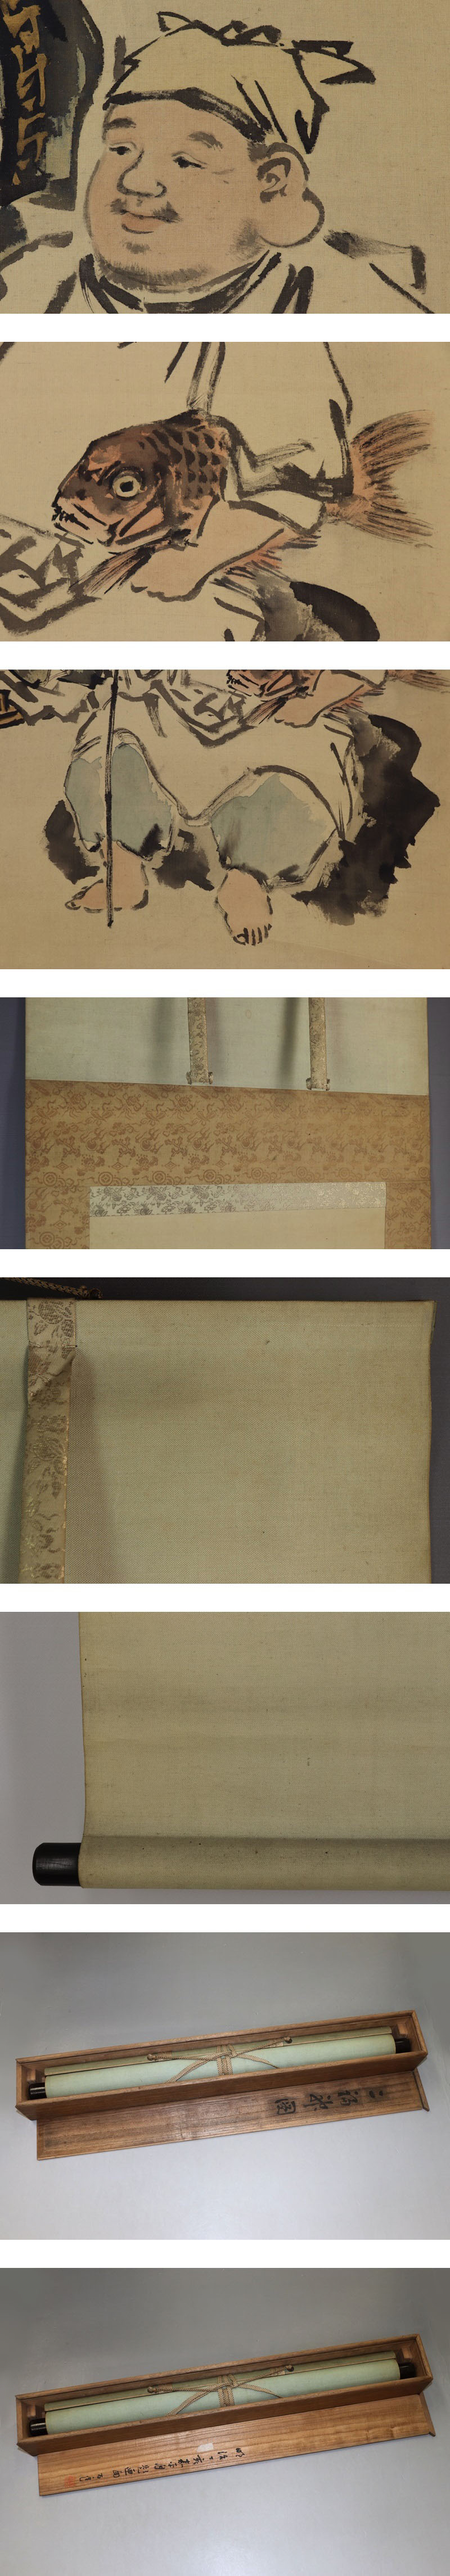 最安値通販鈴木百年◆絹本◆共箱◆二重箱◆掛軸 w08109 人物、菩薩